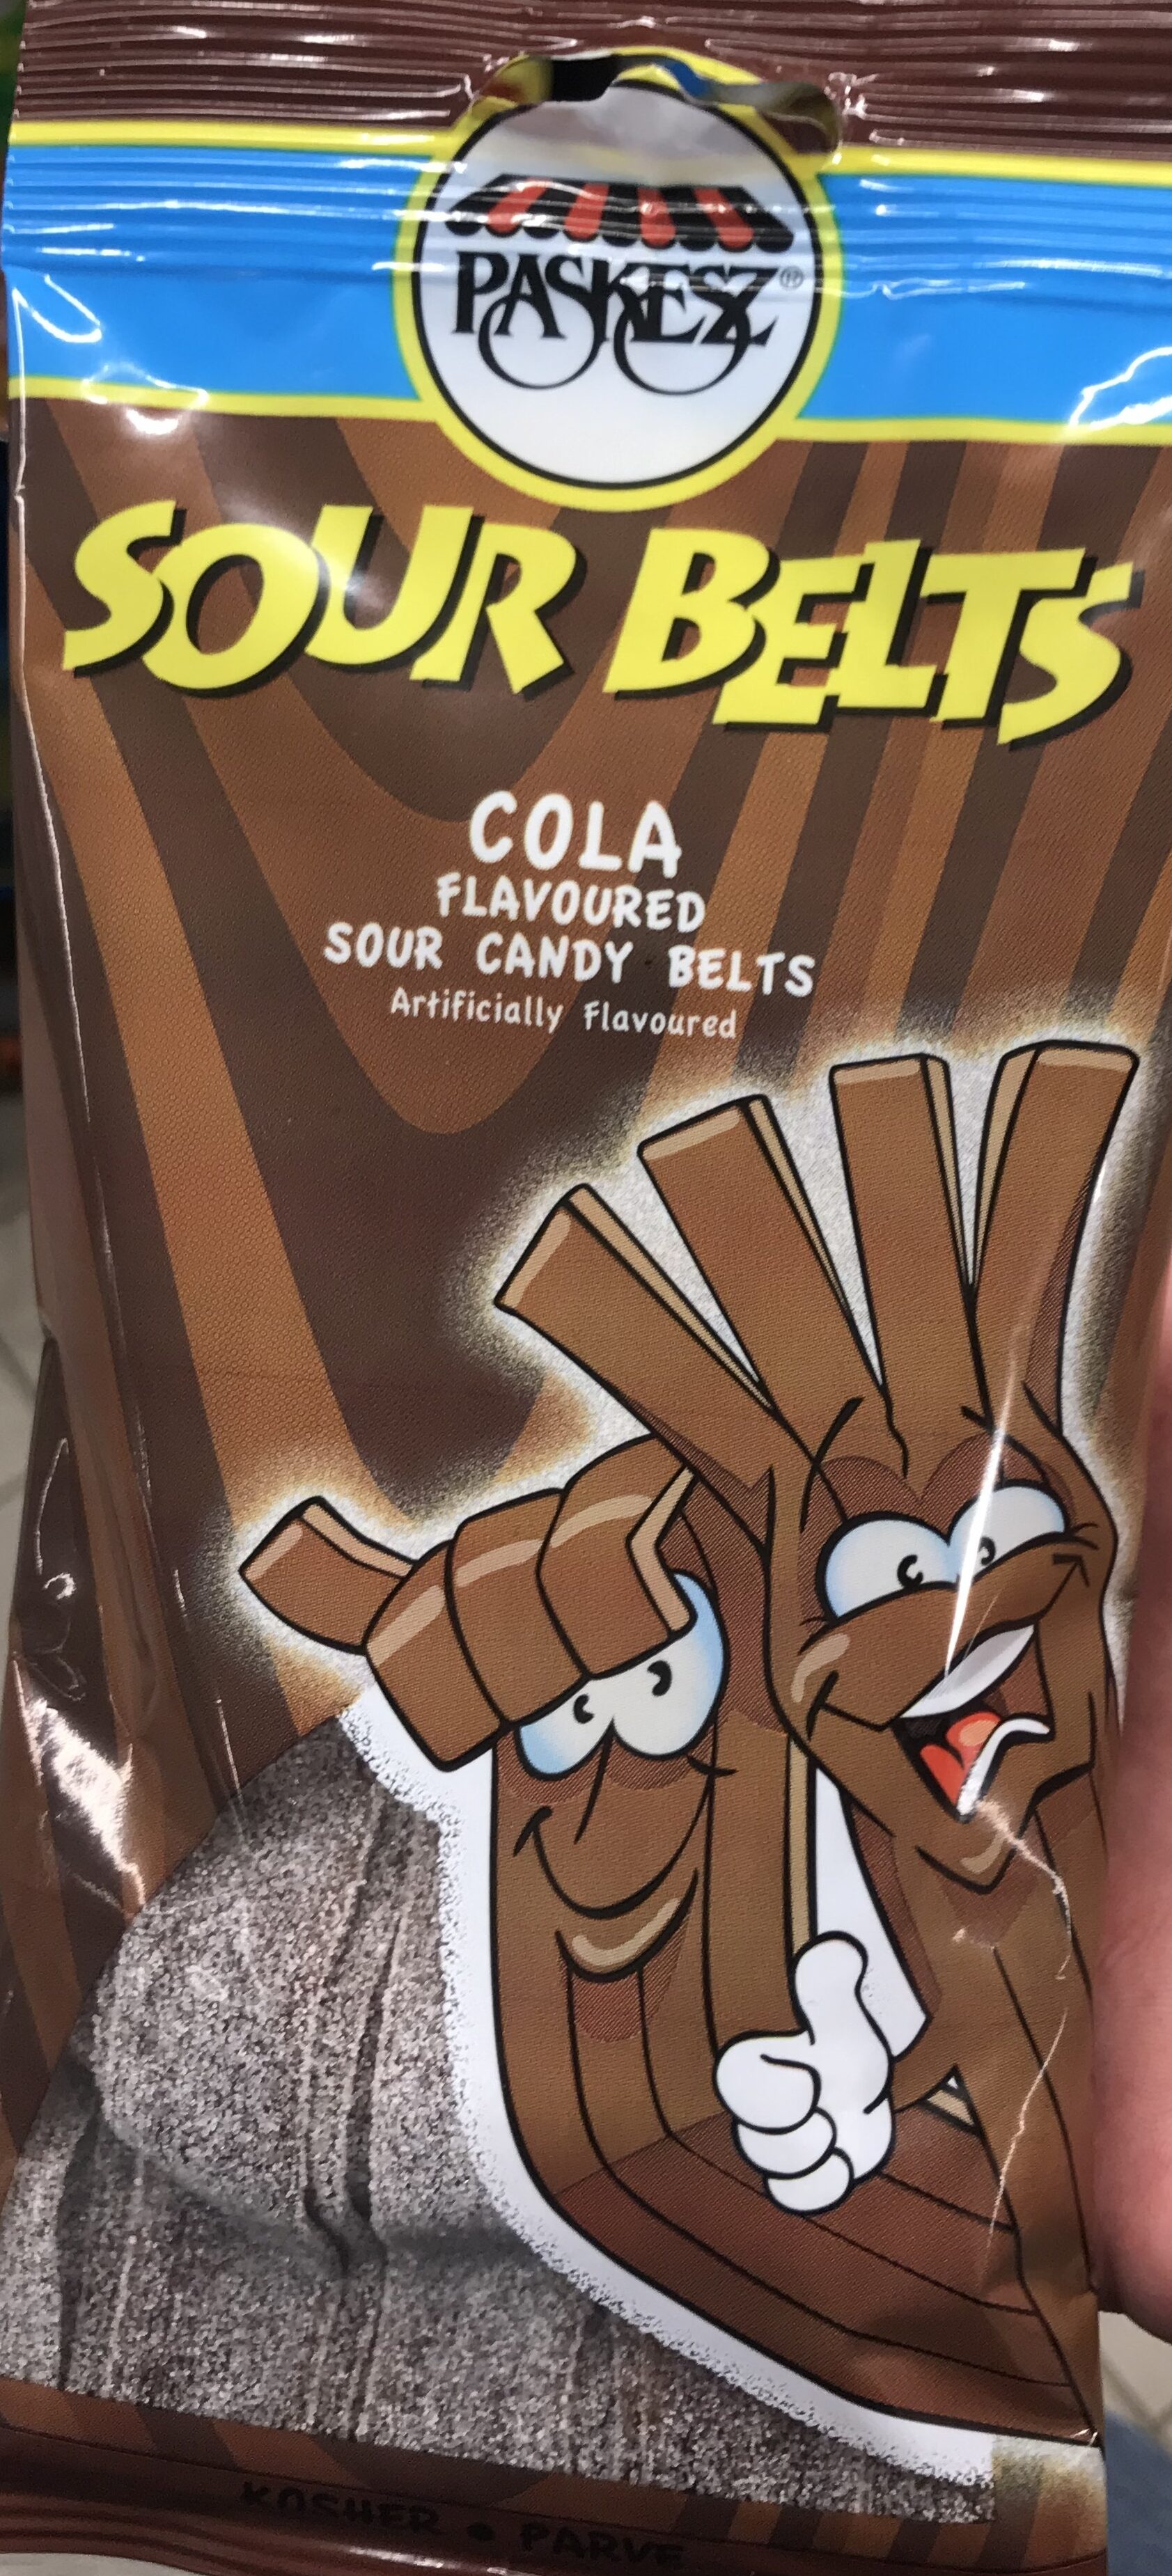 Sour belts cola - Product - fr